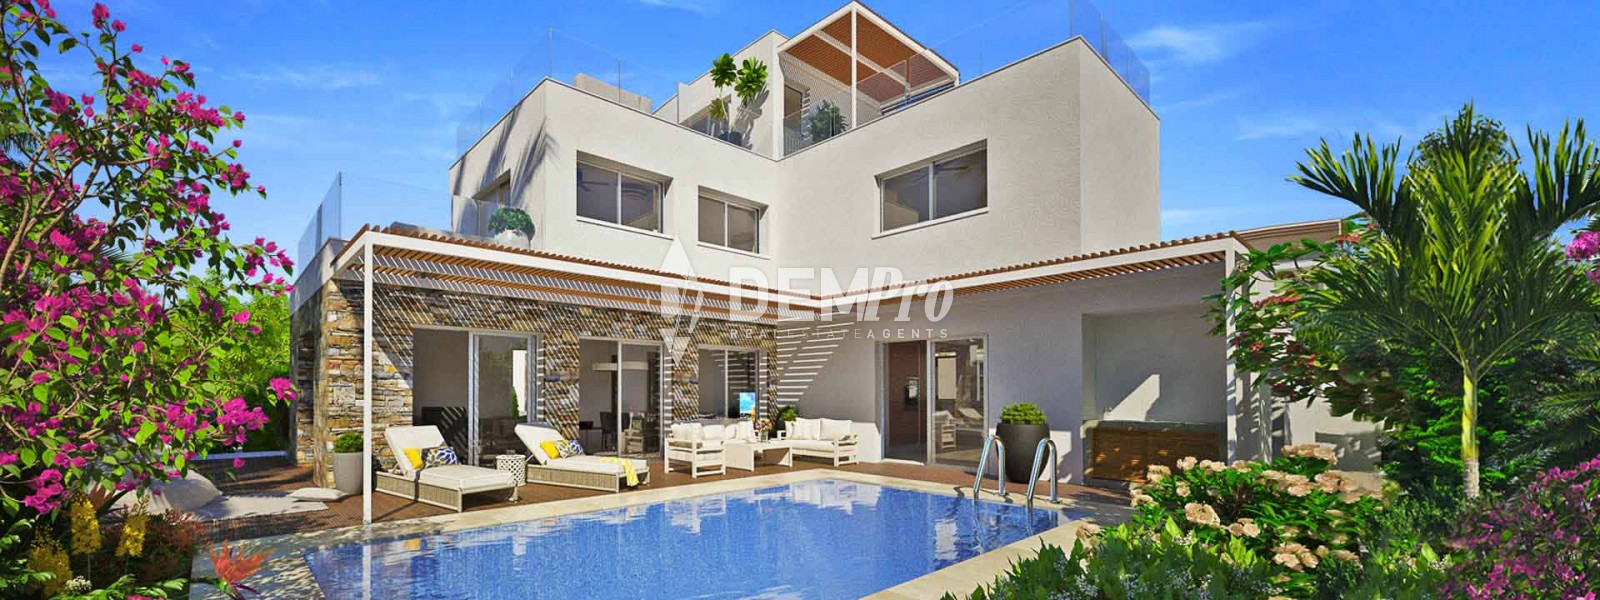 Villa For Sale in Yeroskipou, Paphos - DP512